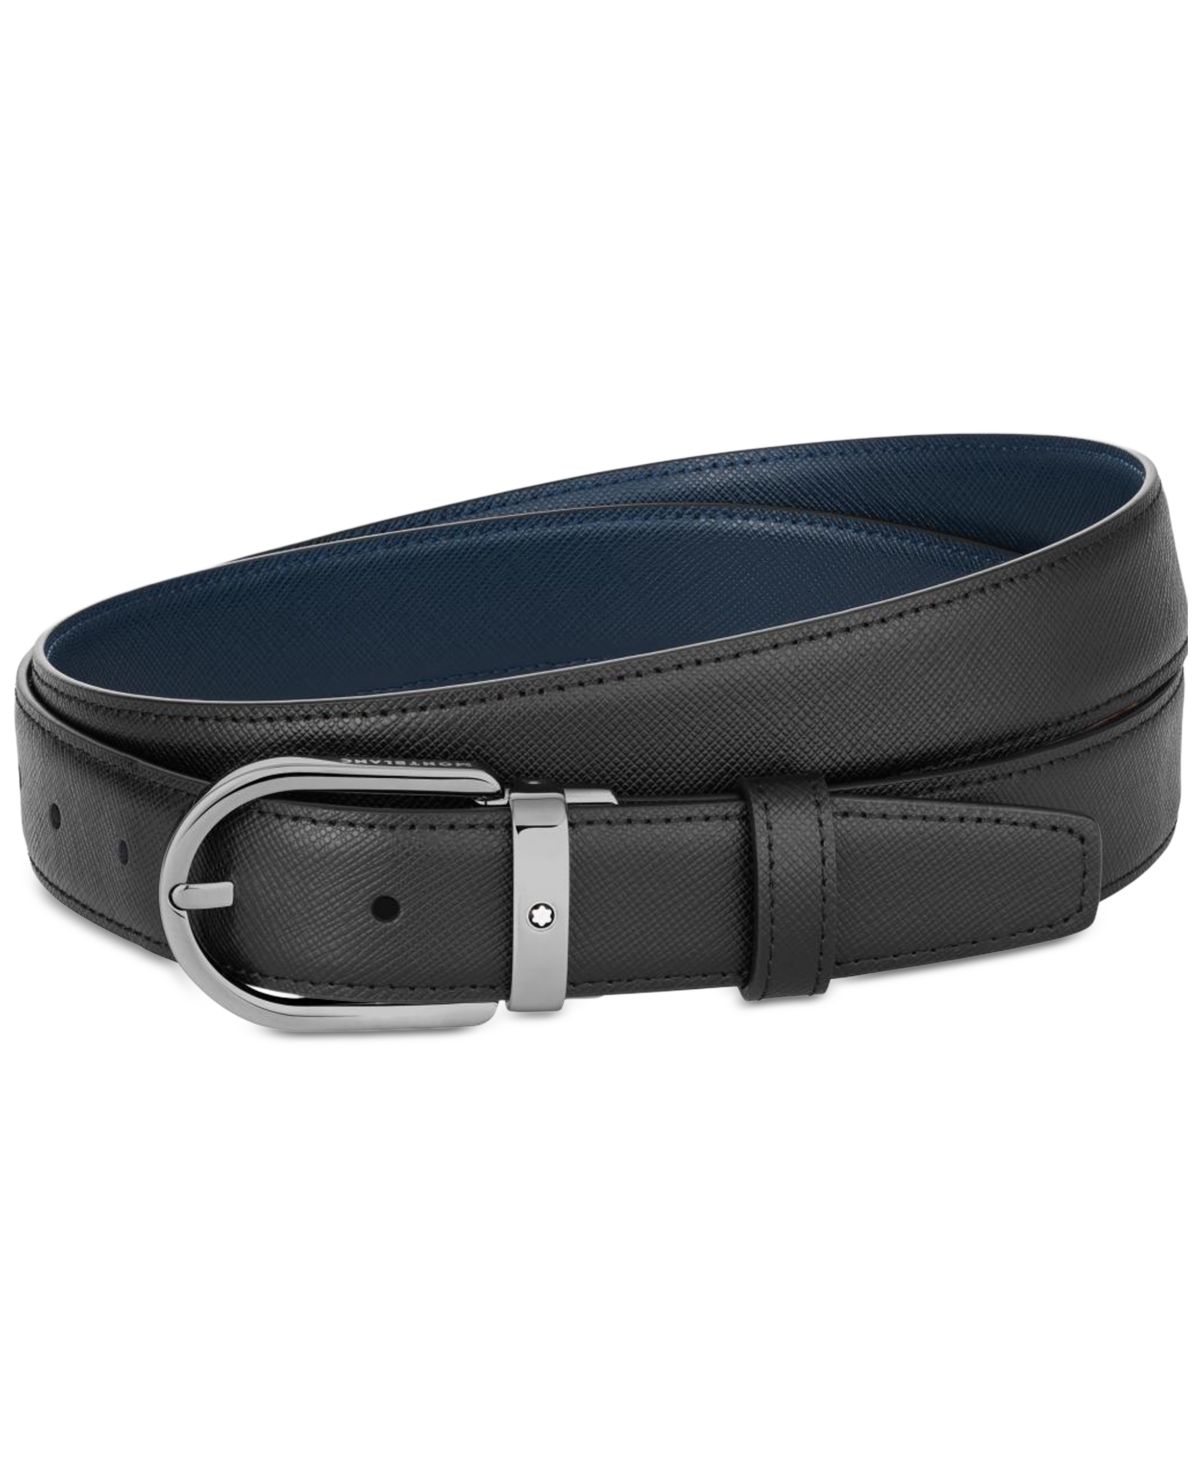 Horseshoe Buckle Reversible Leather Belt - Blue Black